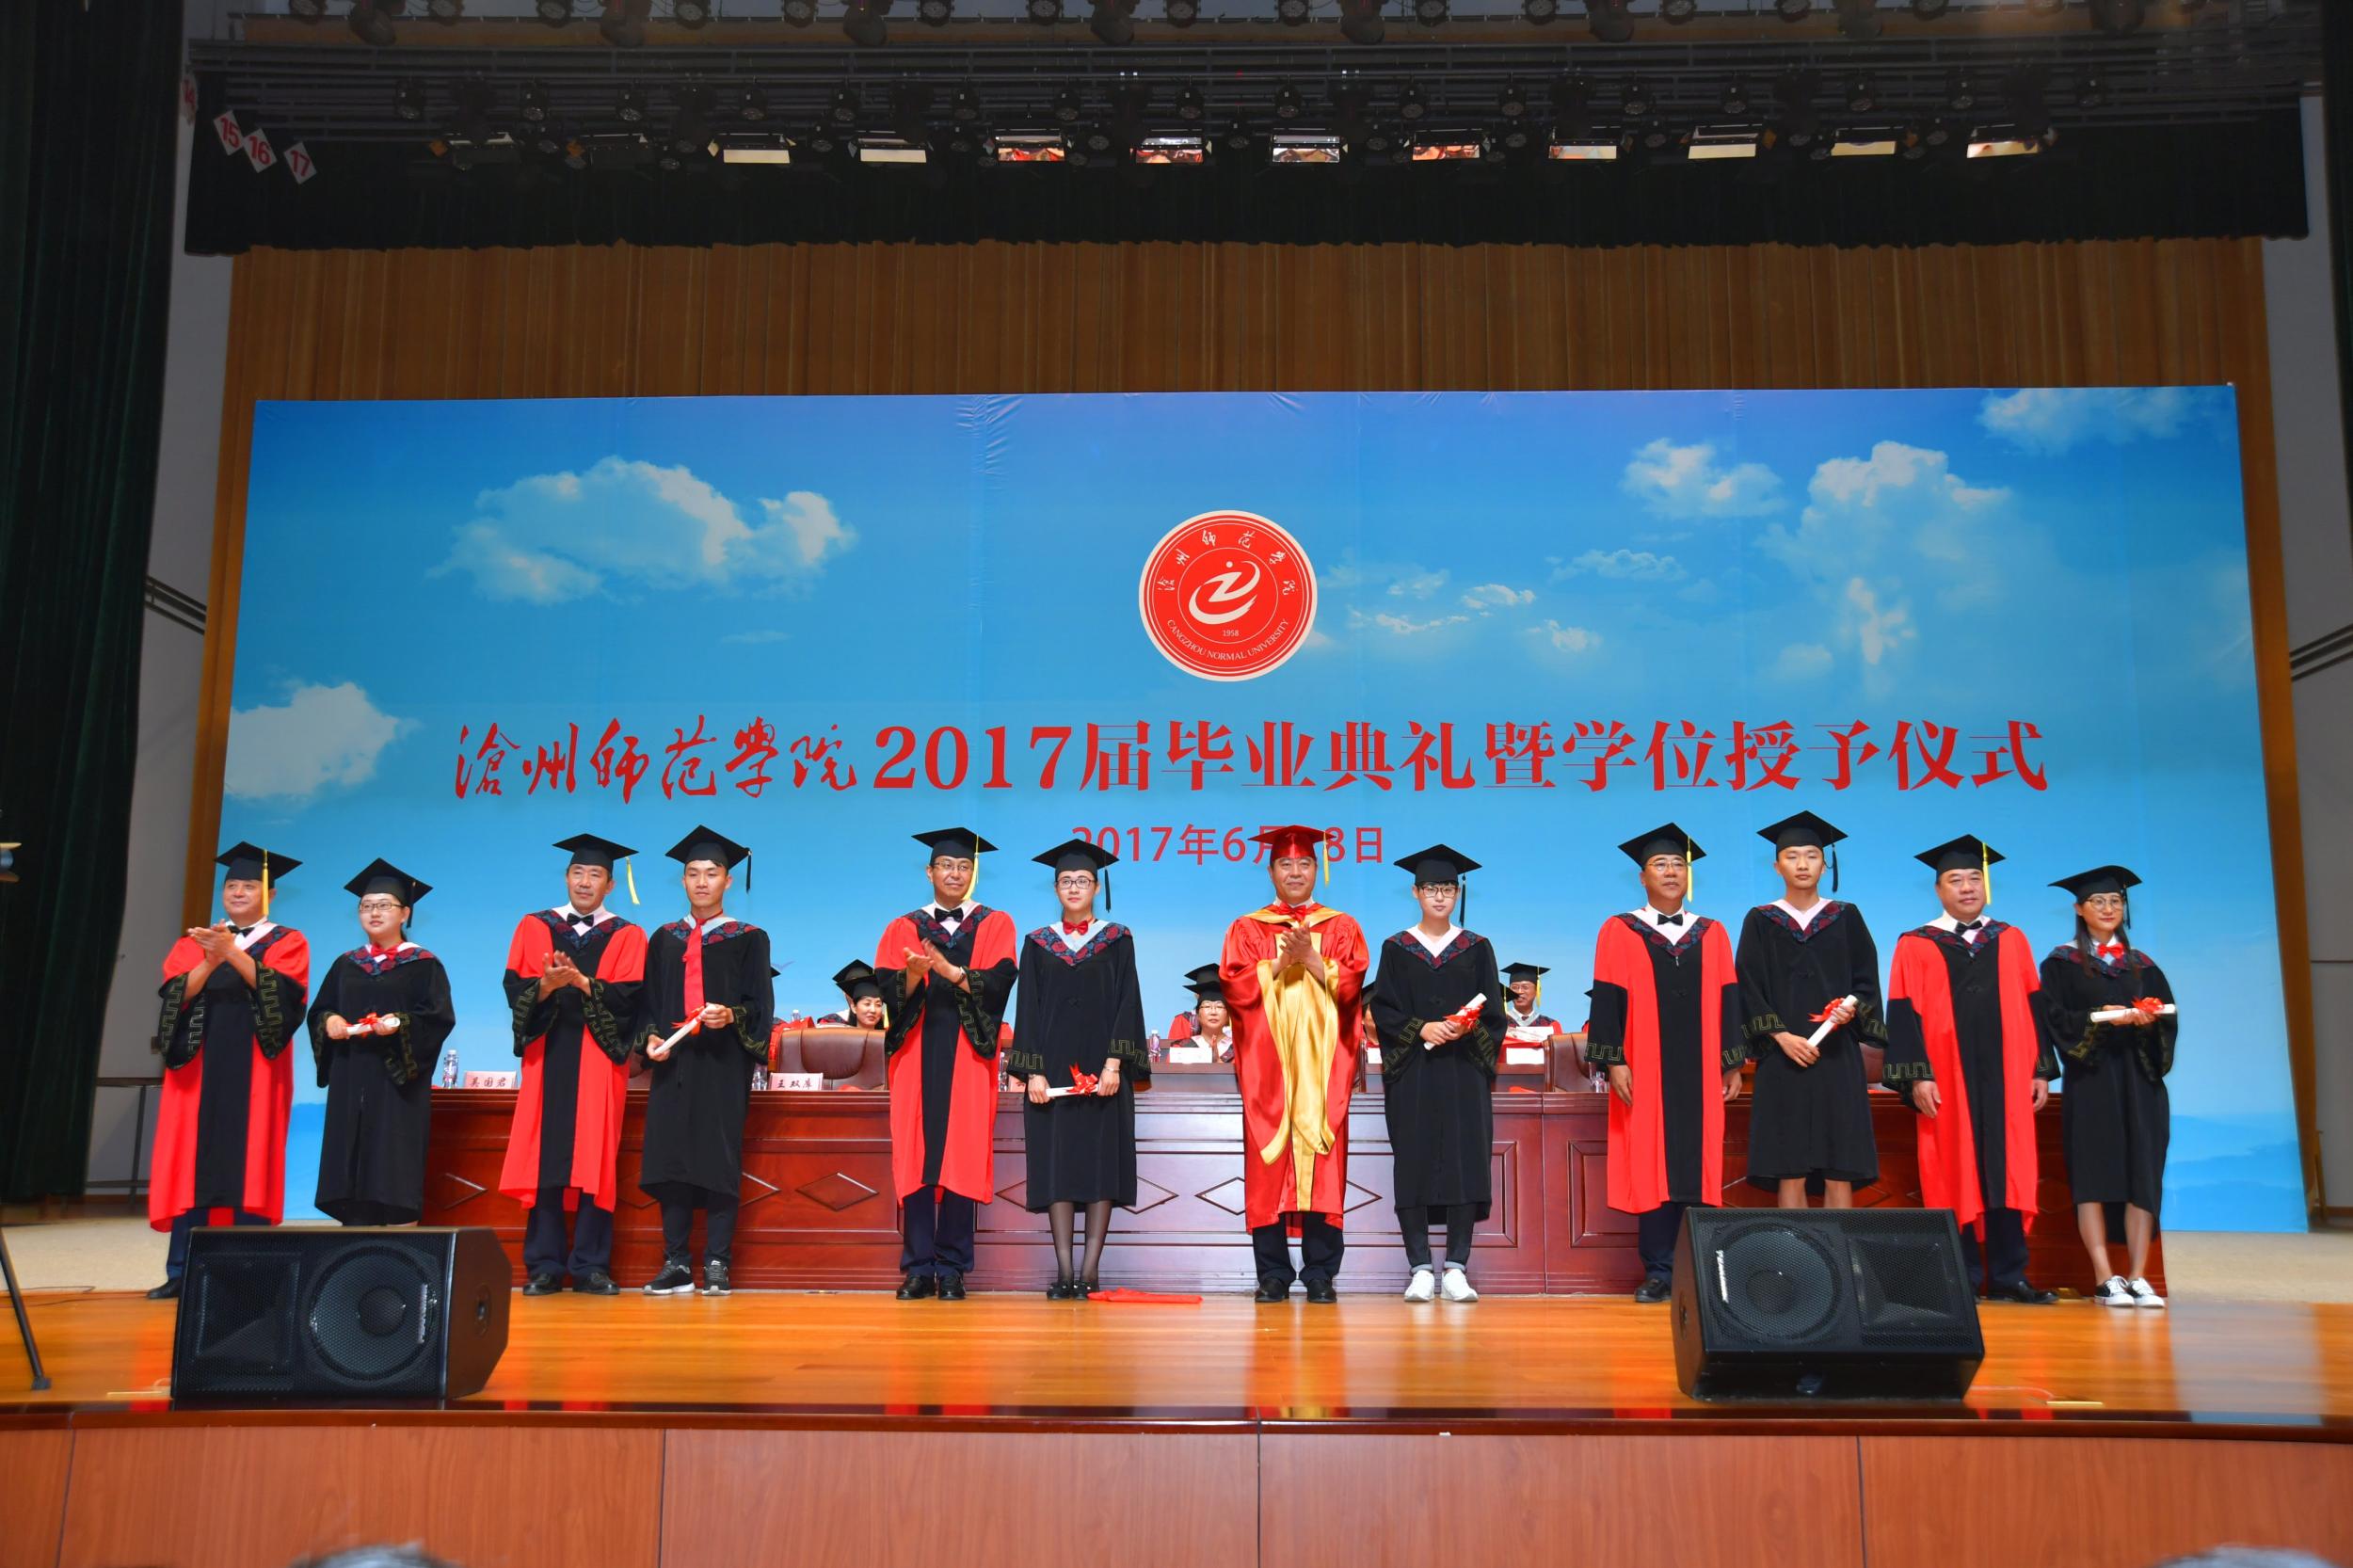 又是一年毕业季 --沧州师范学院2017届毕业典